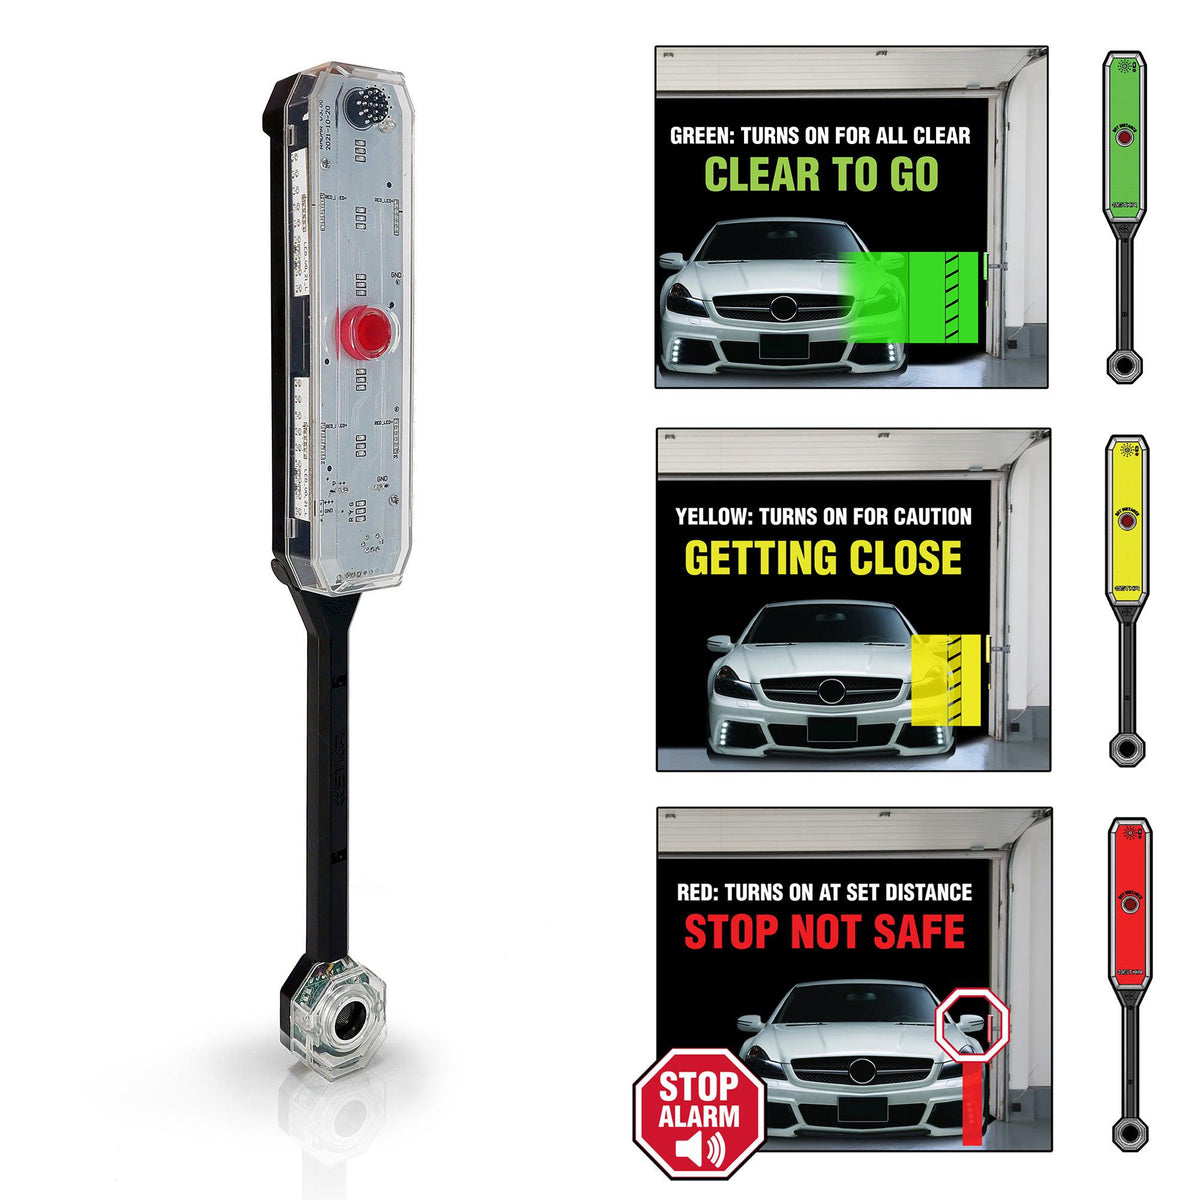 Instalar un sensor de aparcamiento en el coche: ¿Legalidad y garantía?